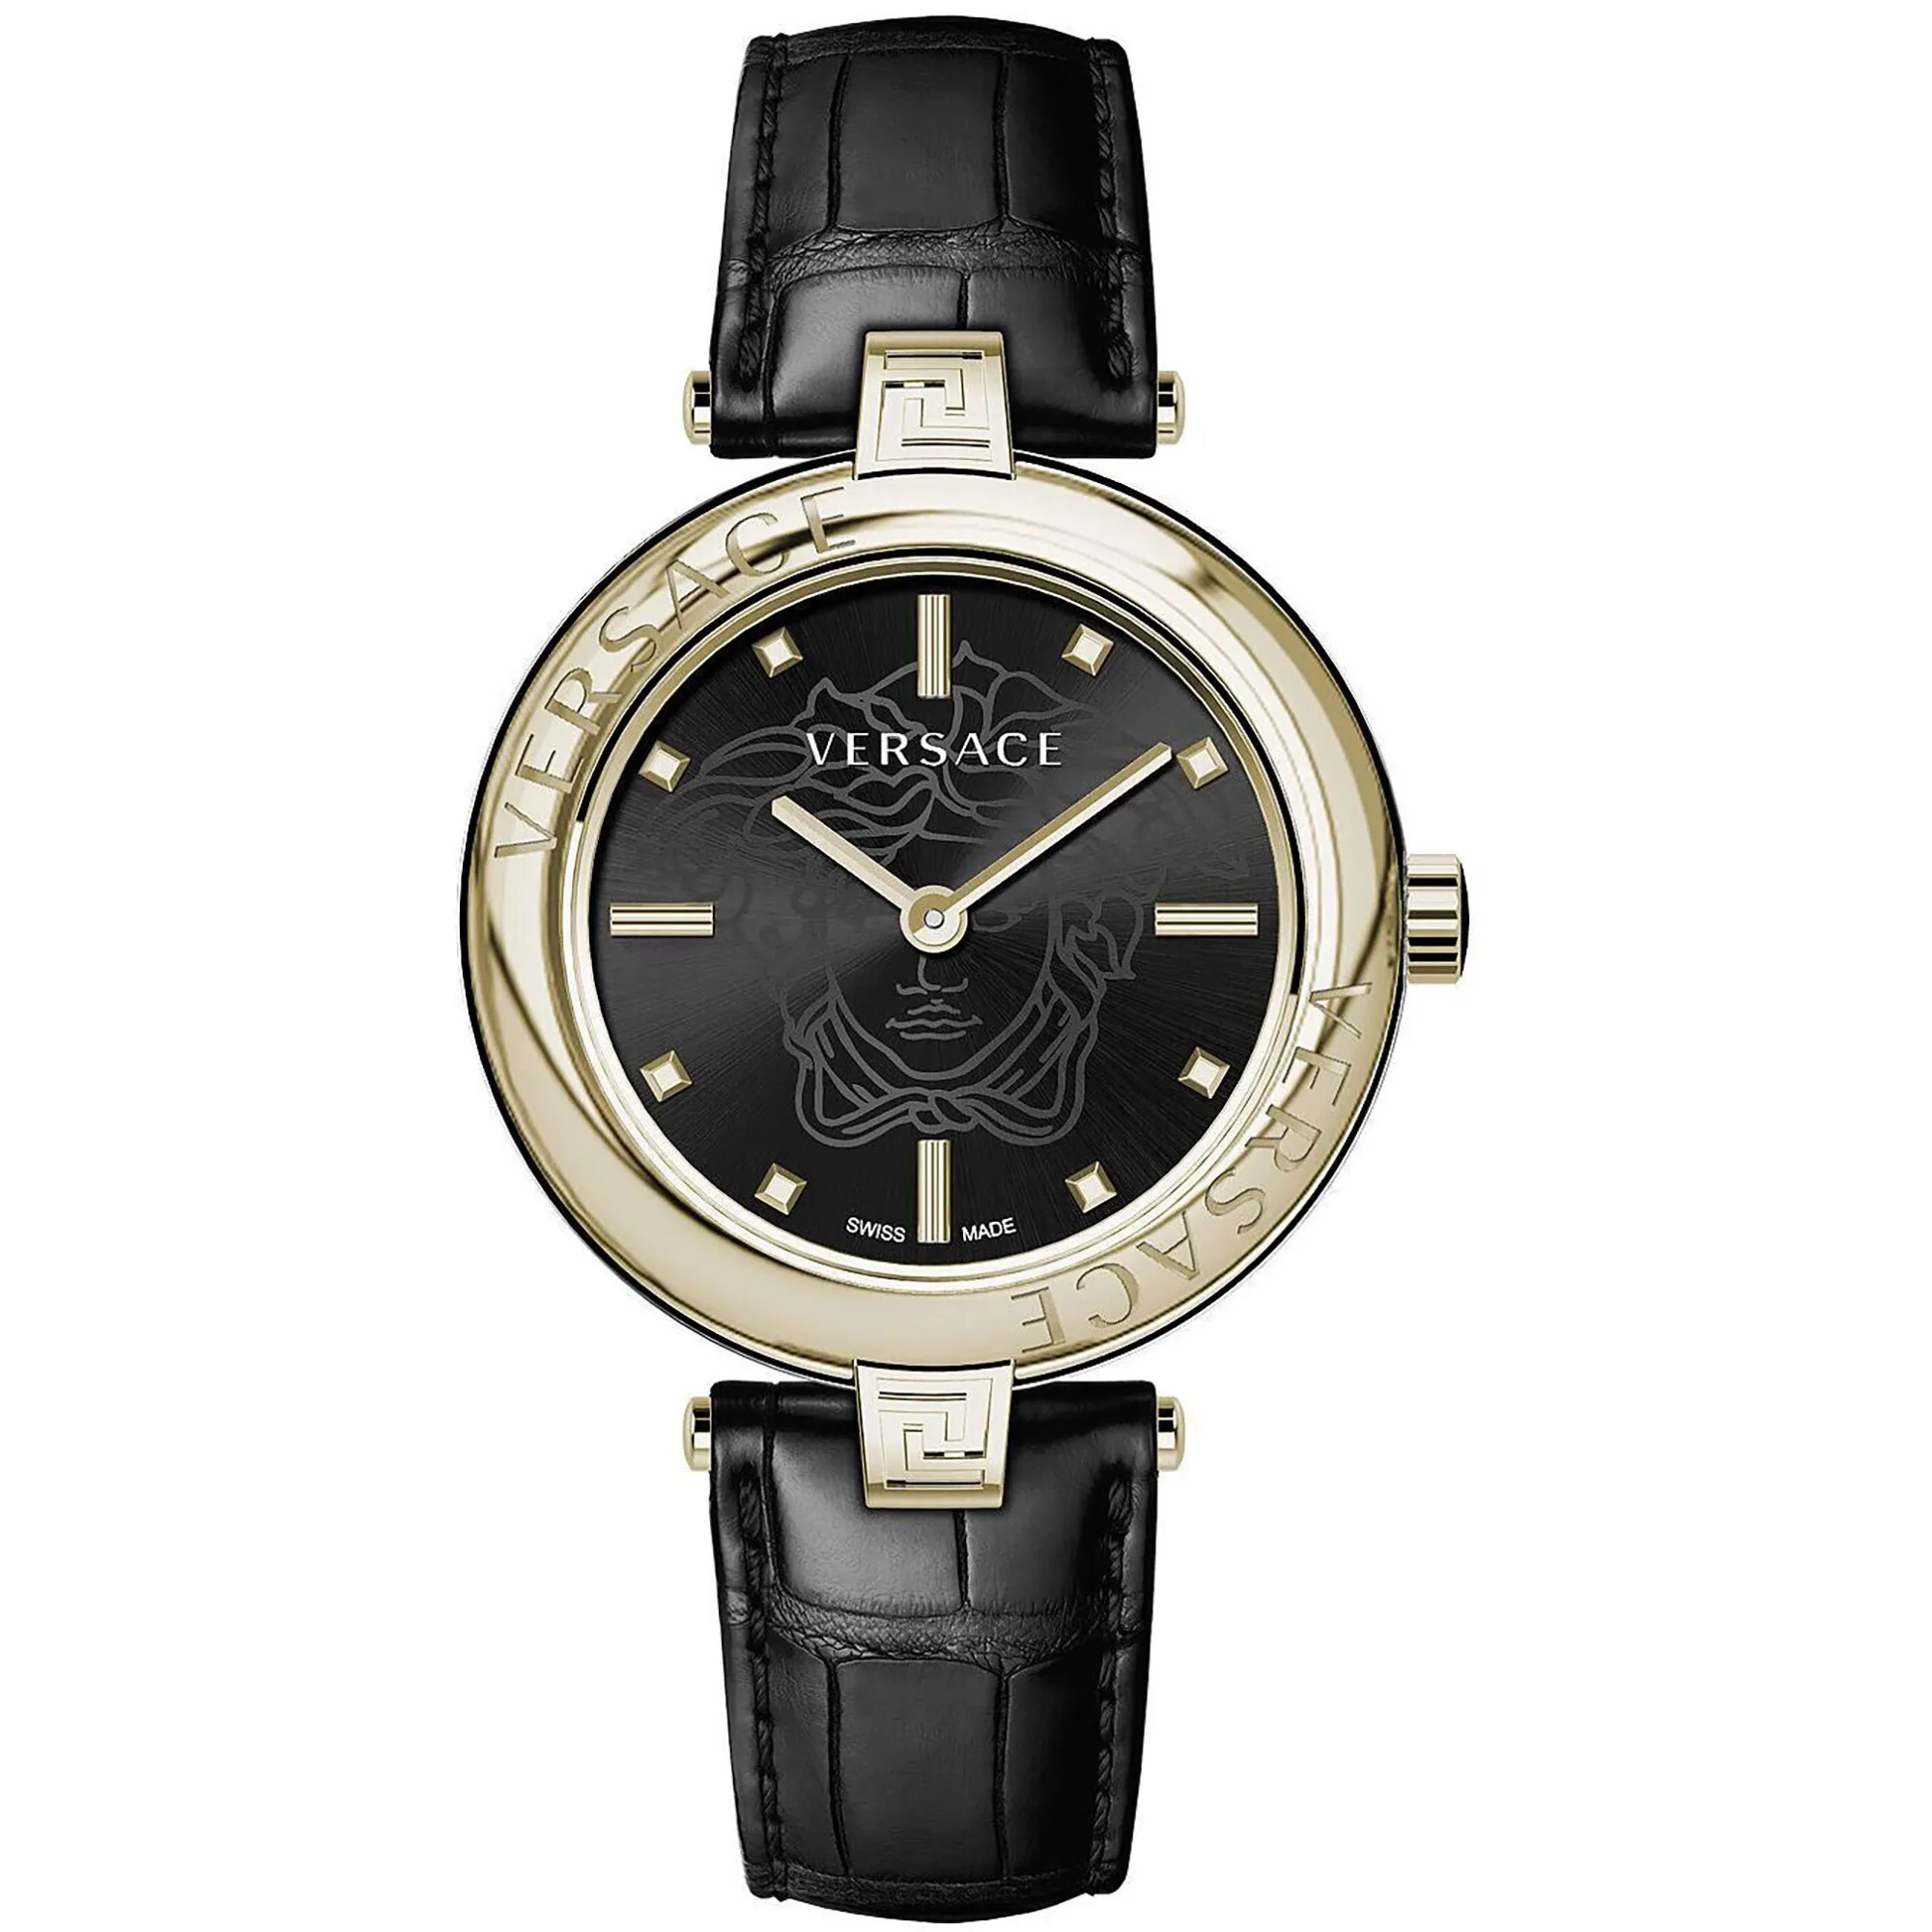 Watch Versace ve2j00421